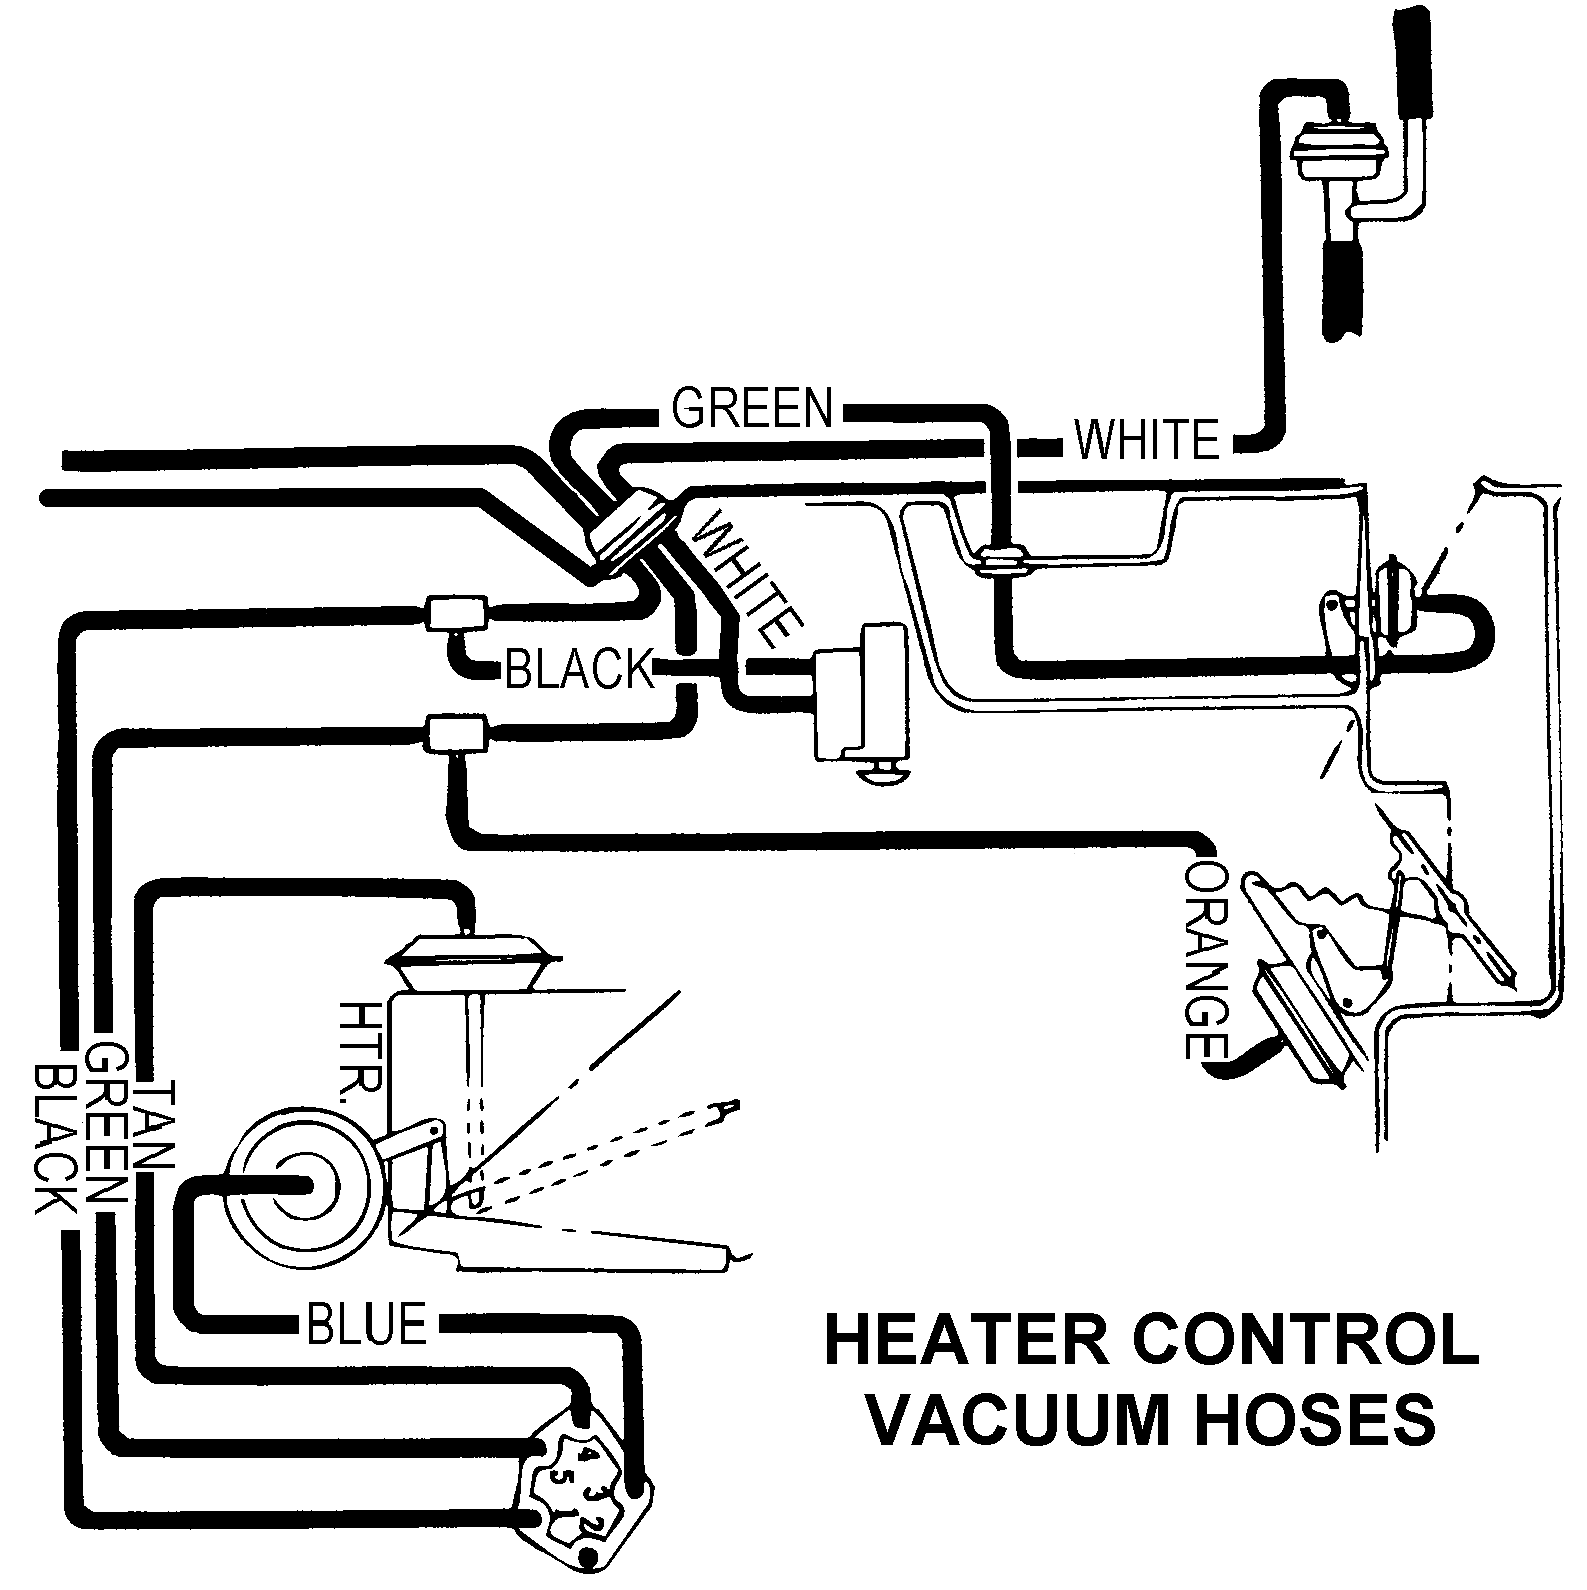 Heater Control Vacuum Hoses - Diagram View